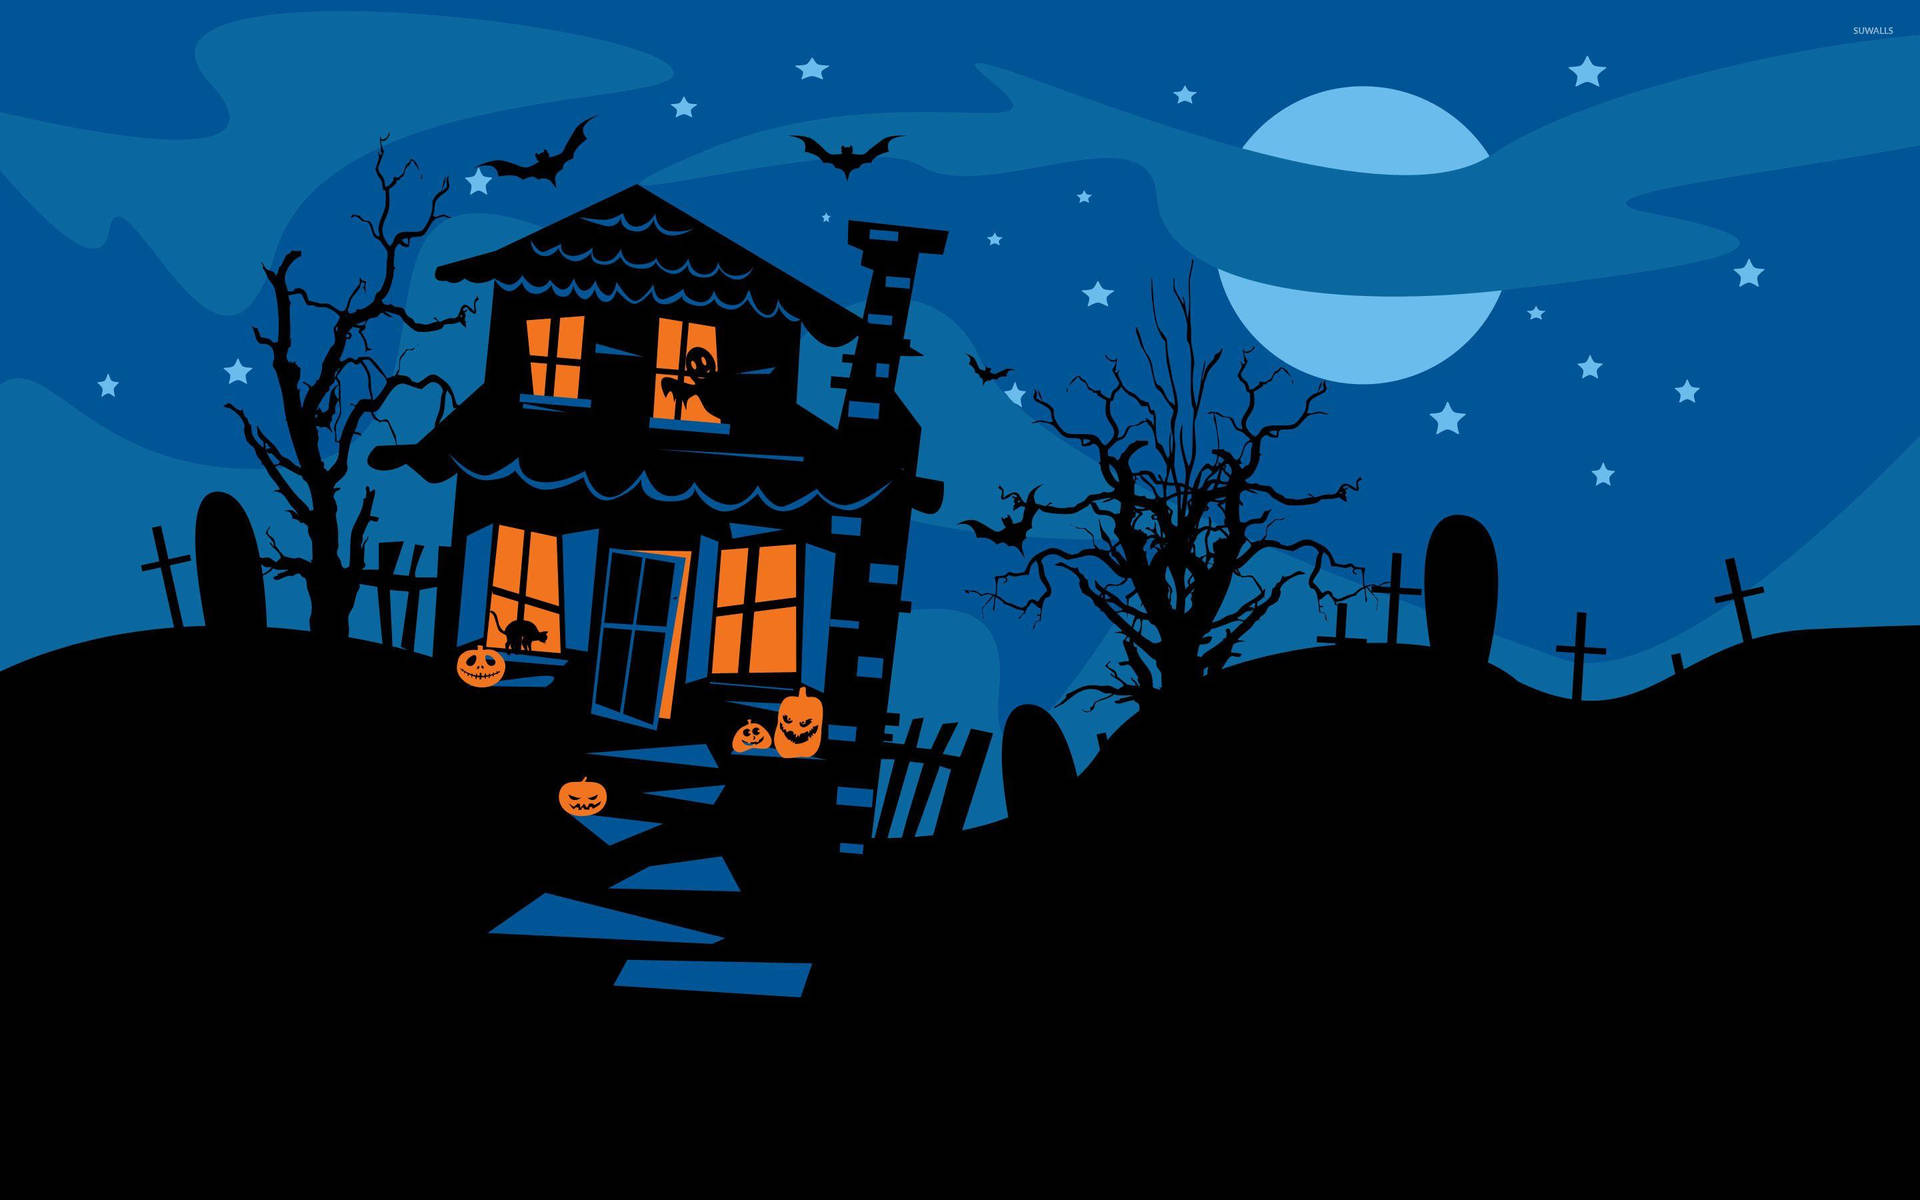 Træd ind i et hjemsøgt hus denne Halloween og vær forberedt på gys og spænding. Wallpaper